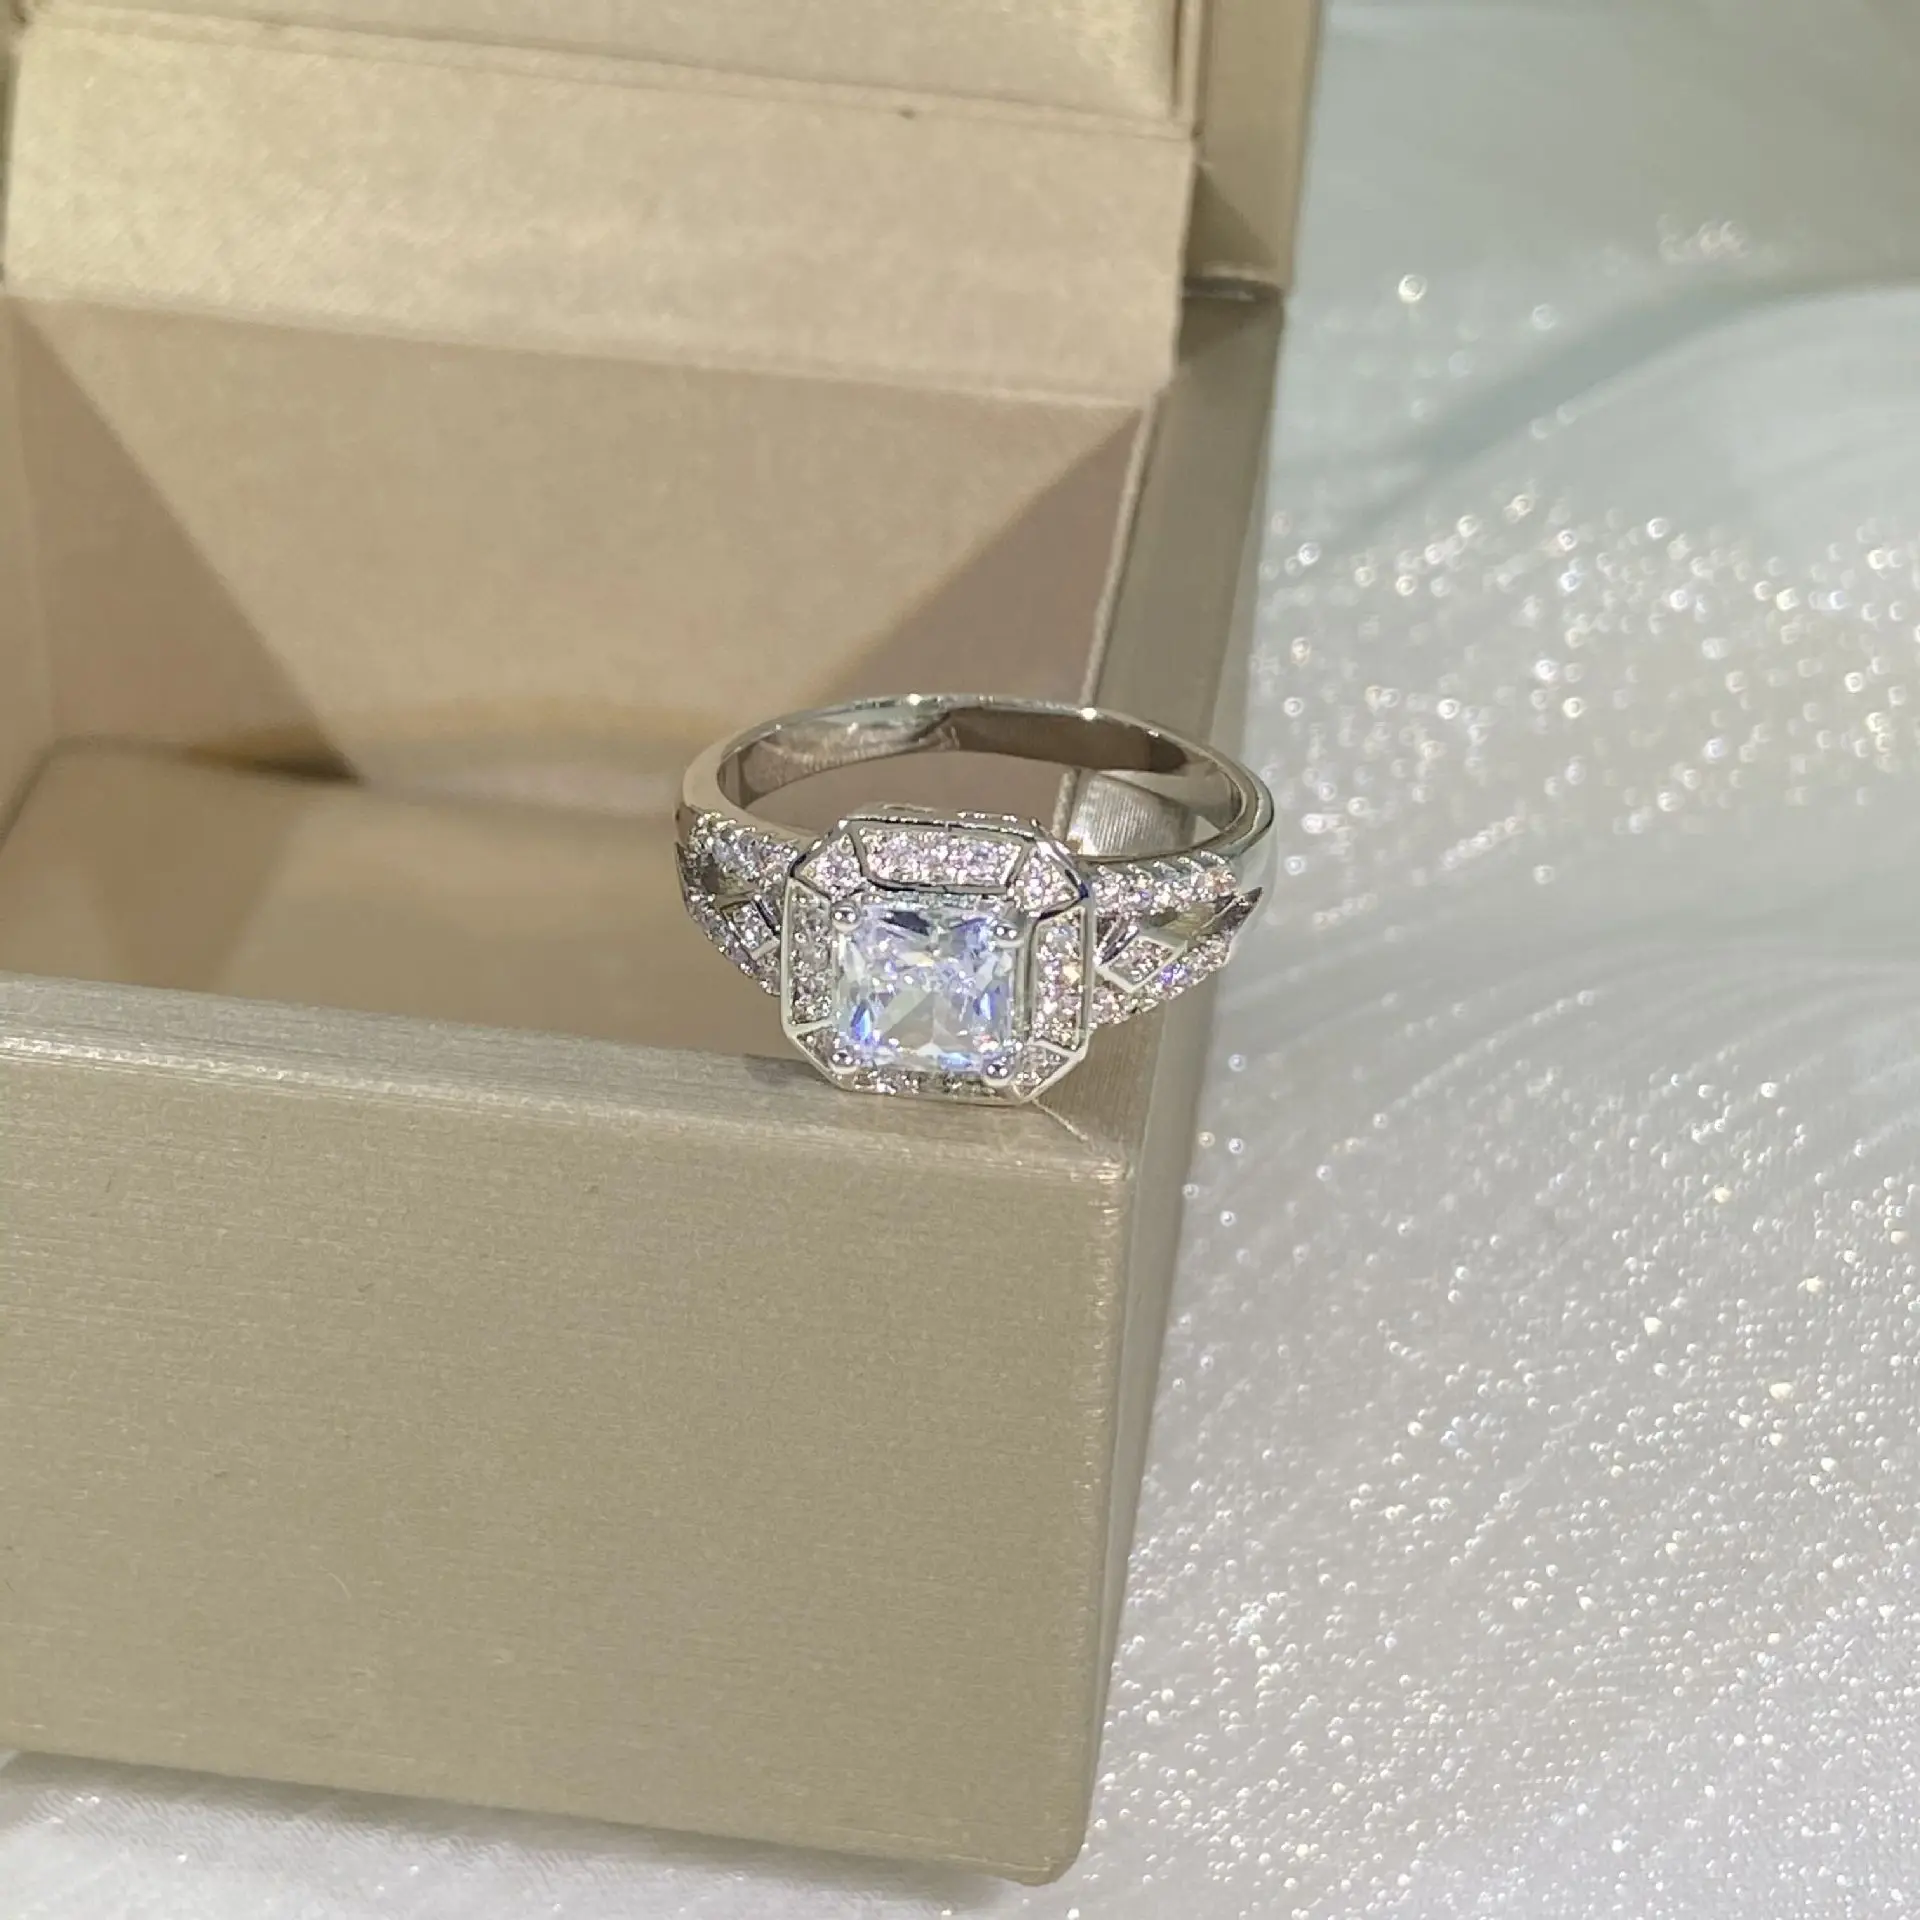 Anillos De CN (Происхождение) Кольцо с бриллиантом Женские Изящные обручальные кольца Ювелирные изделия из серебра 925 пробы Кольцо с бриллиантом для женщин Драгоценный камень